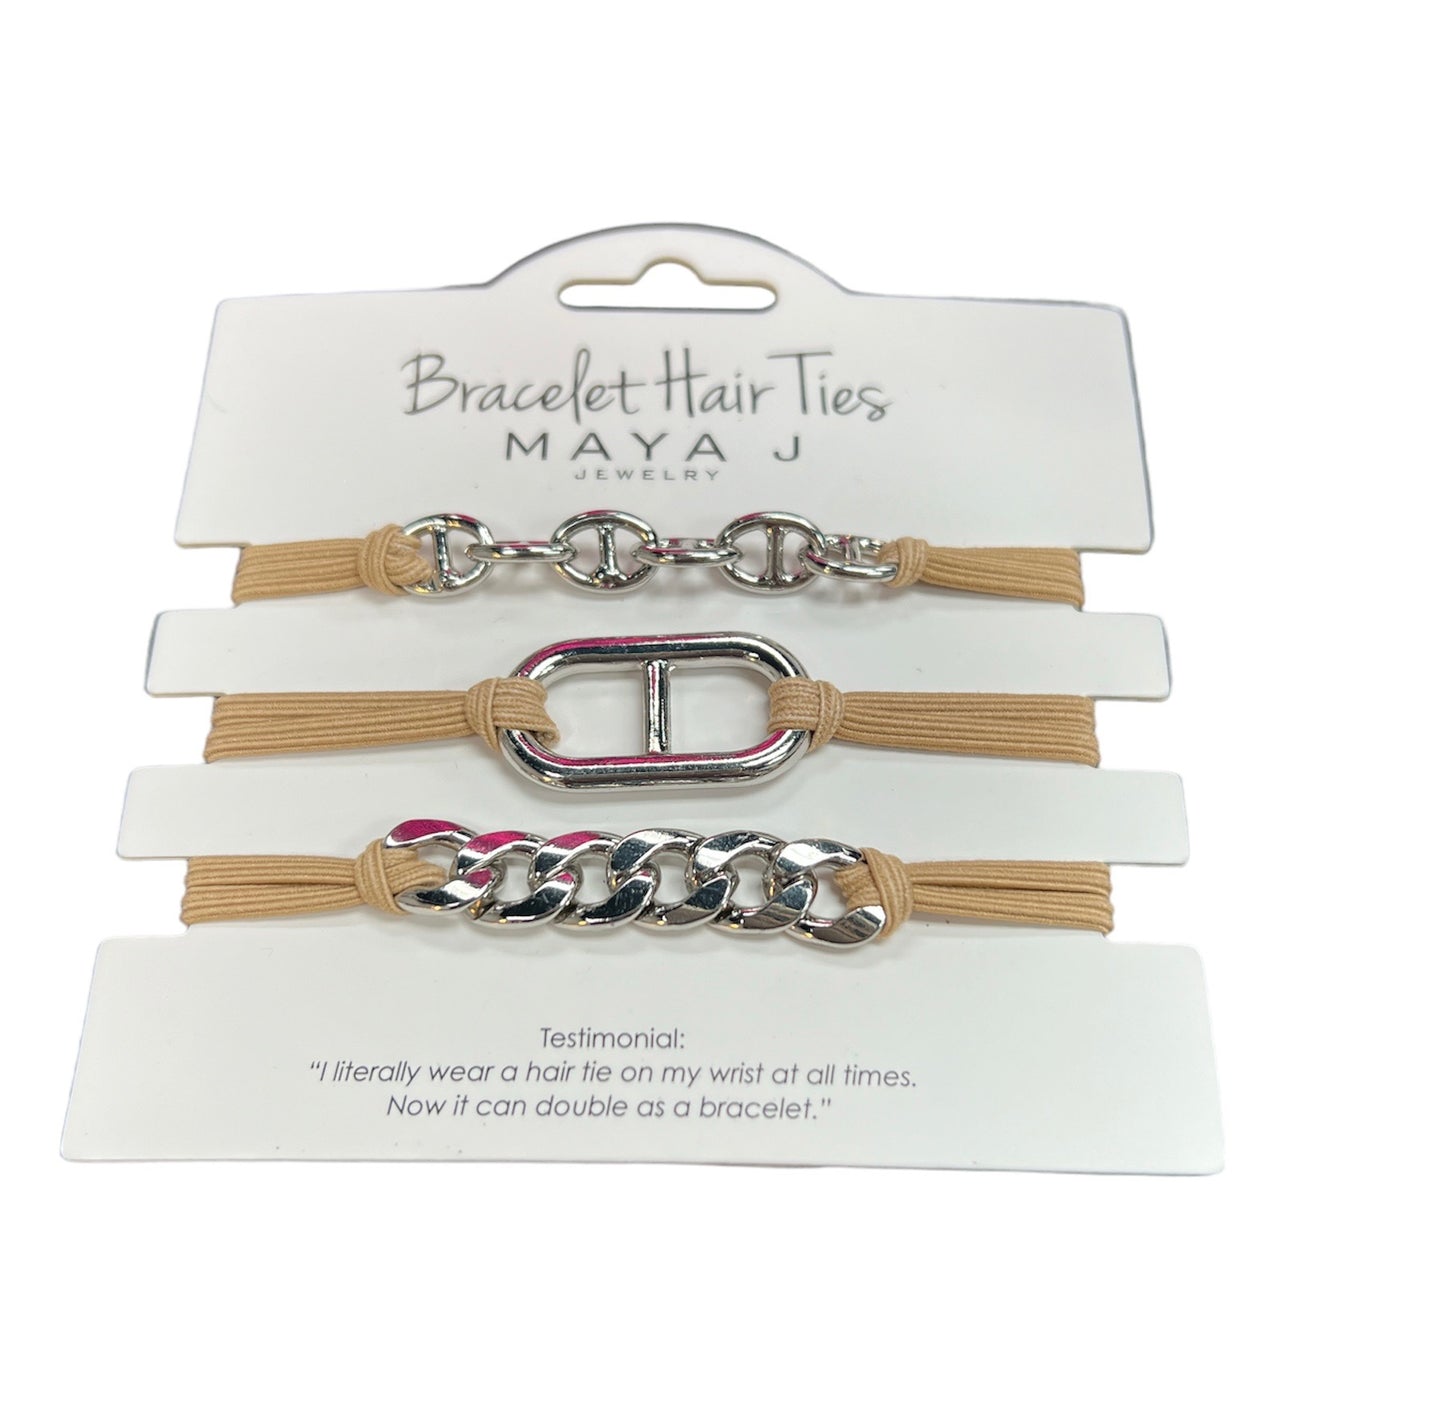 Bracelet Hair Ties - Silver Chain 2 on Beige Cord